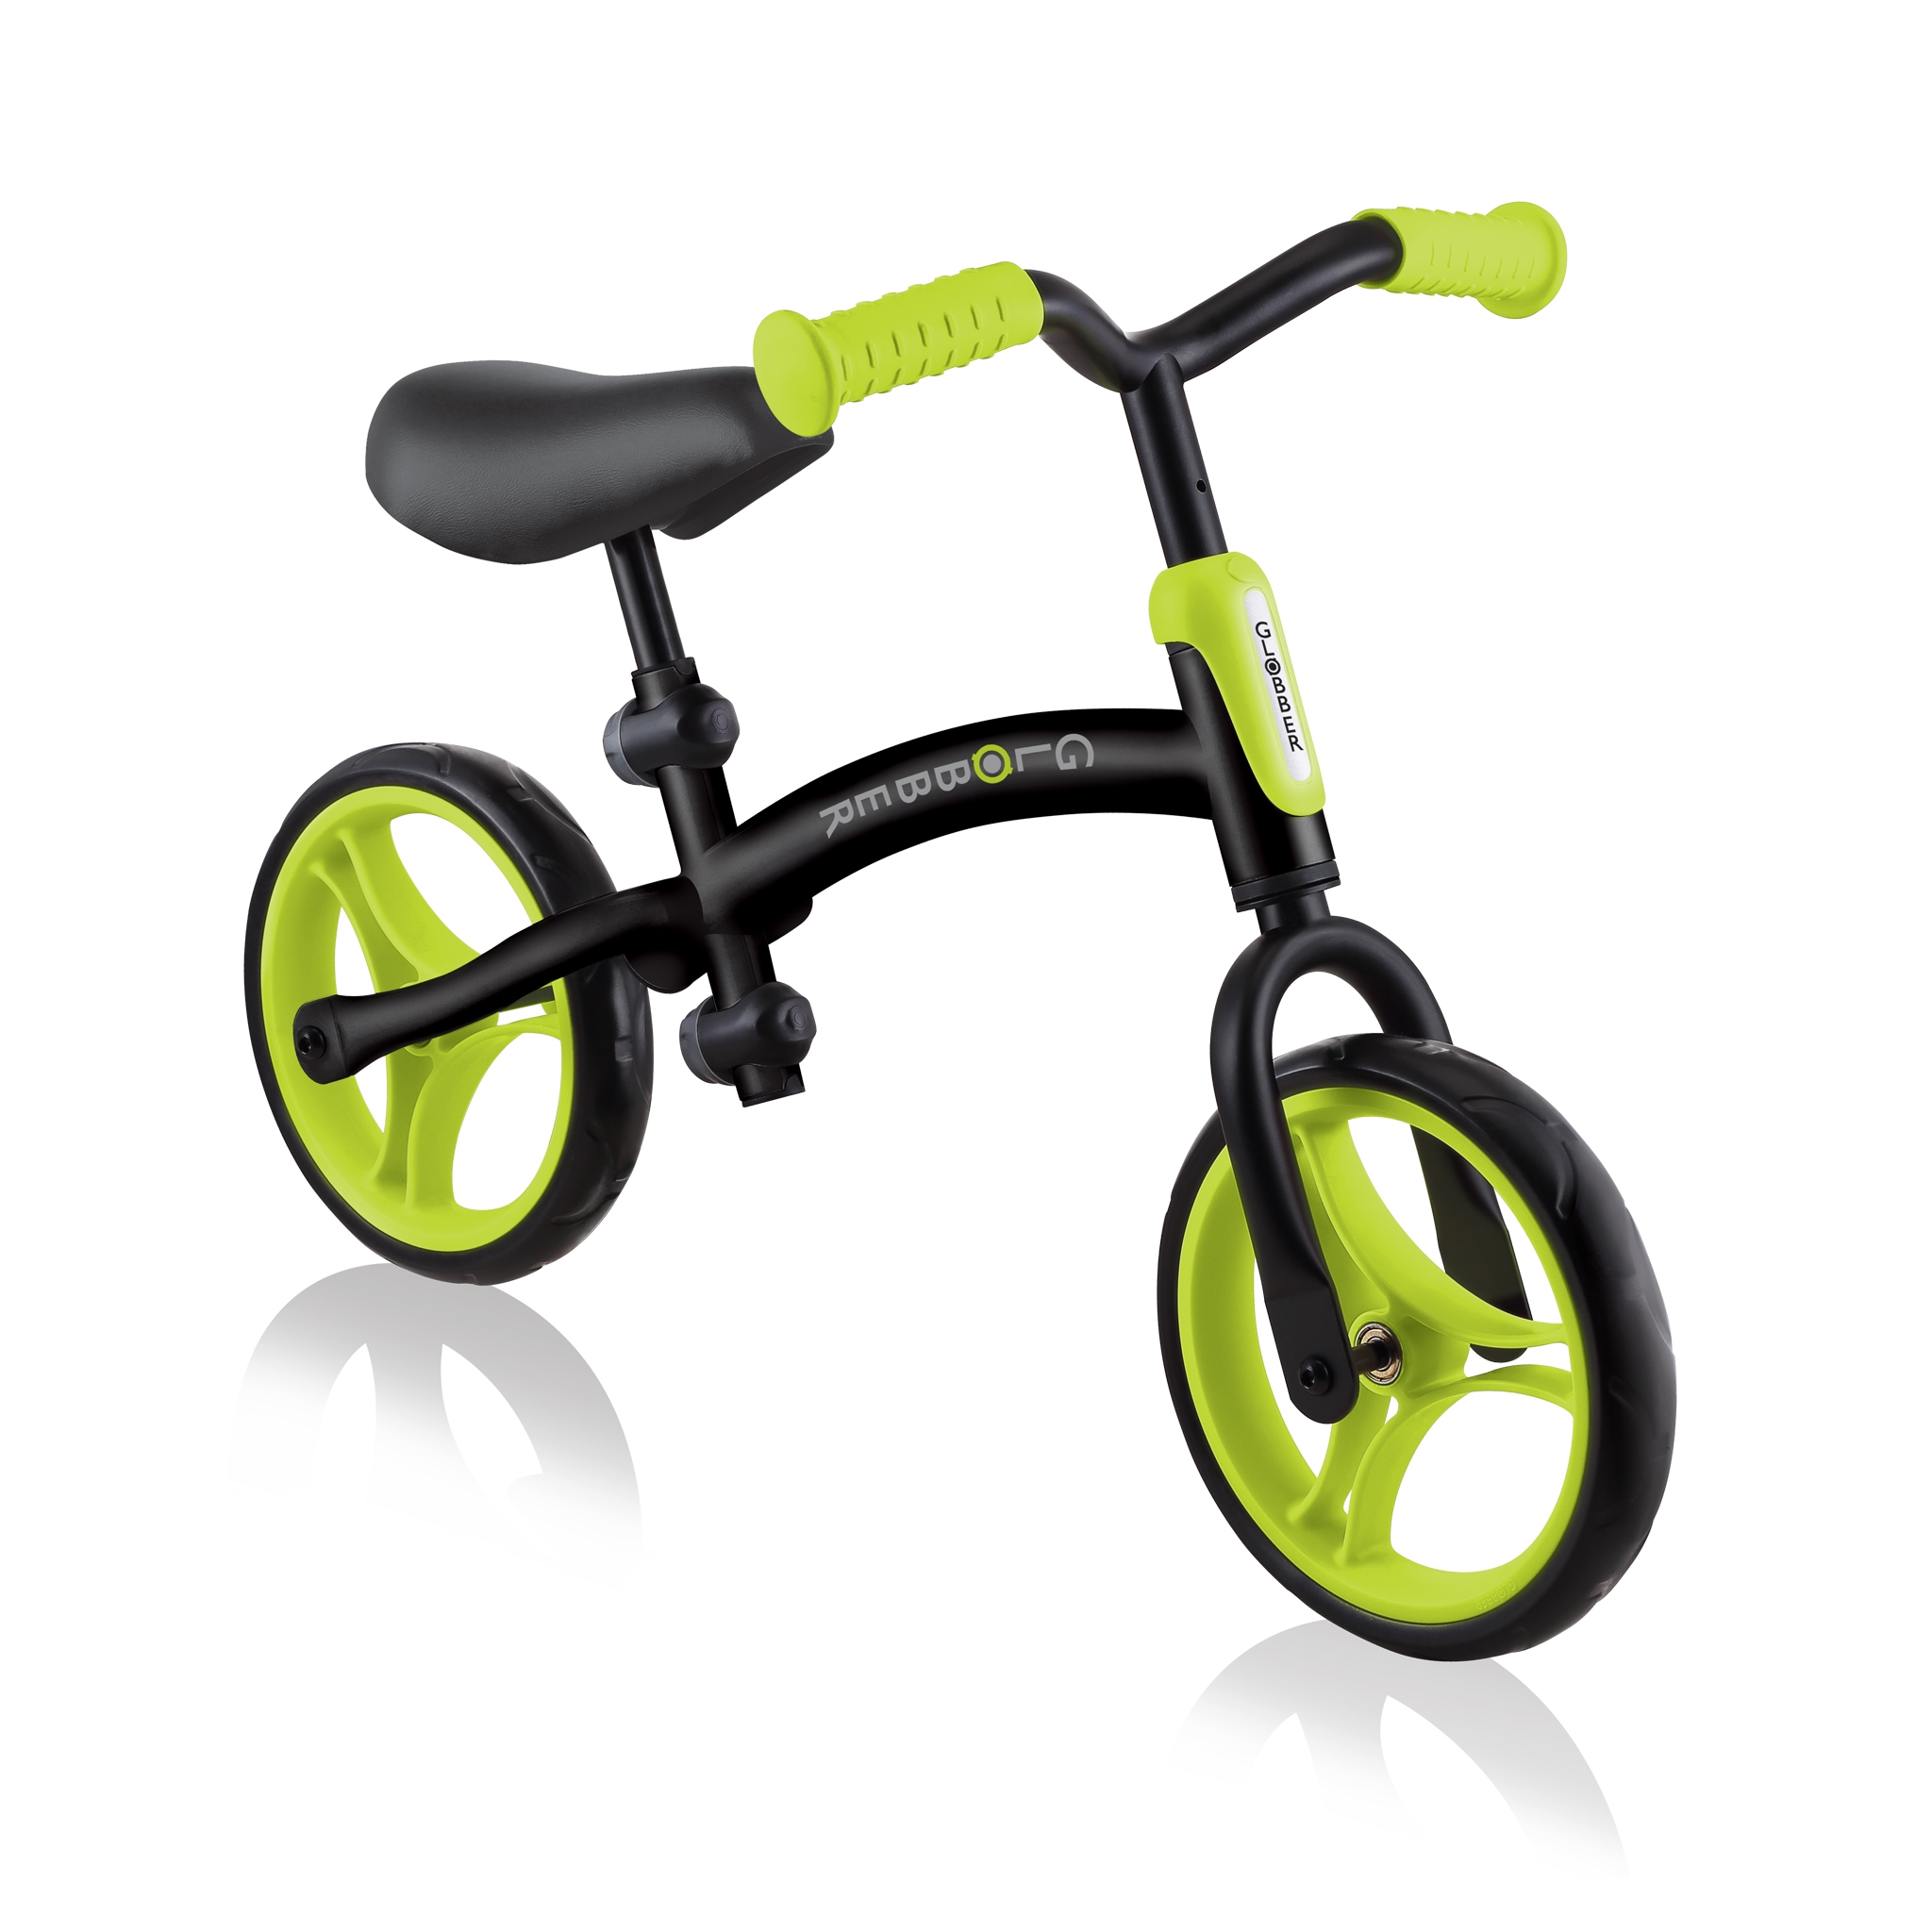 GO-BIKE-durable-baby-balance-bike 1